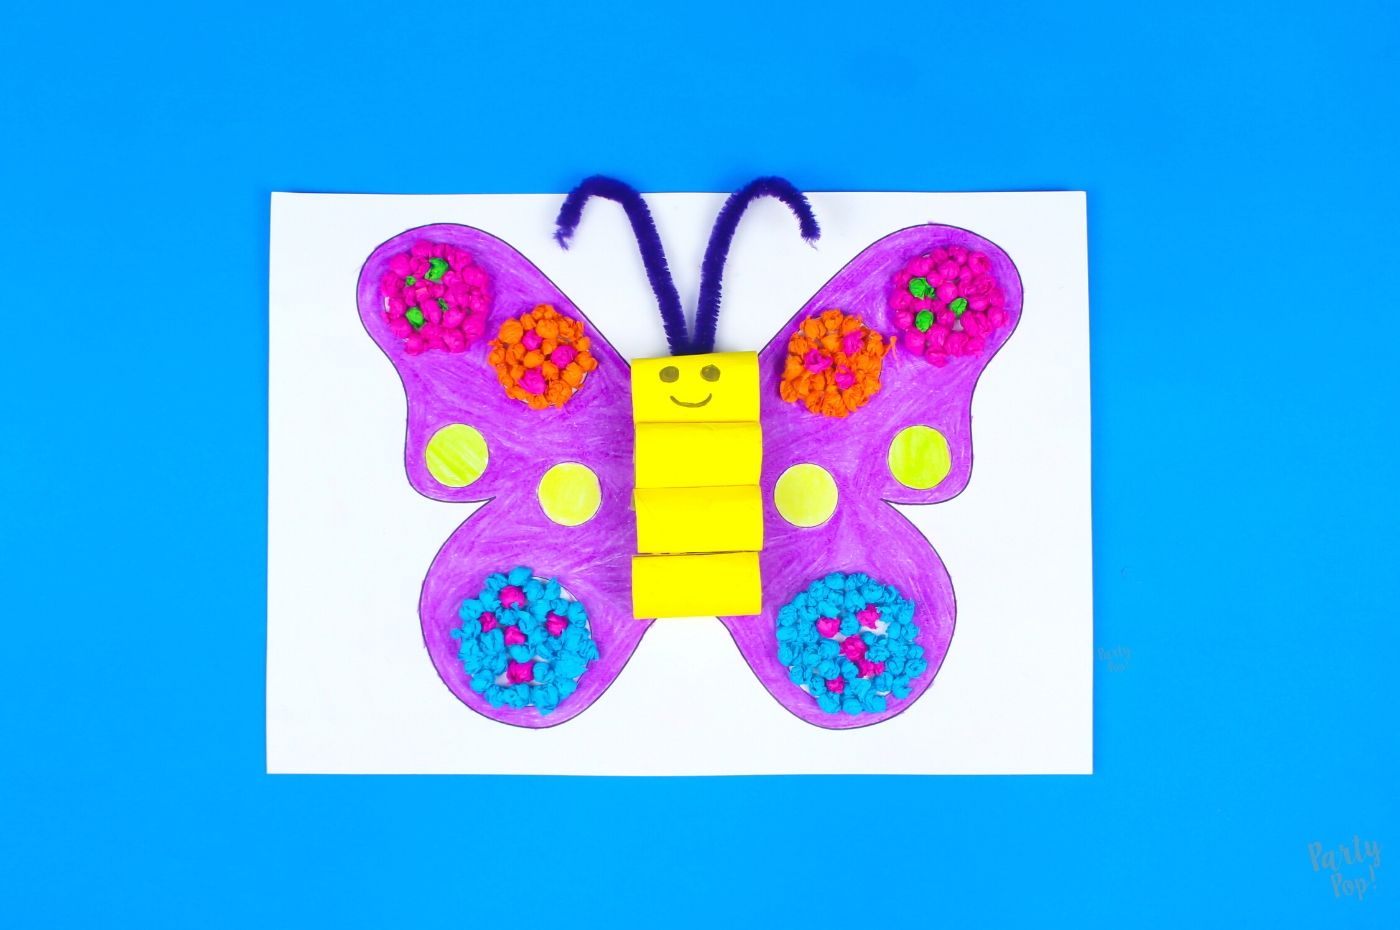 Treinta inercia excusa Actividades para niños - Idea Mariposa 🦋 | PartyPop DIY